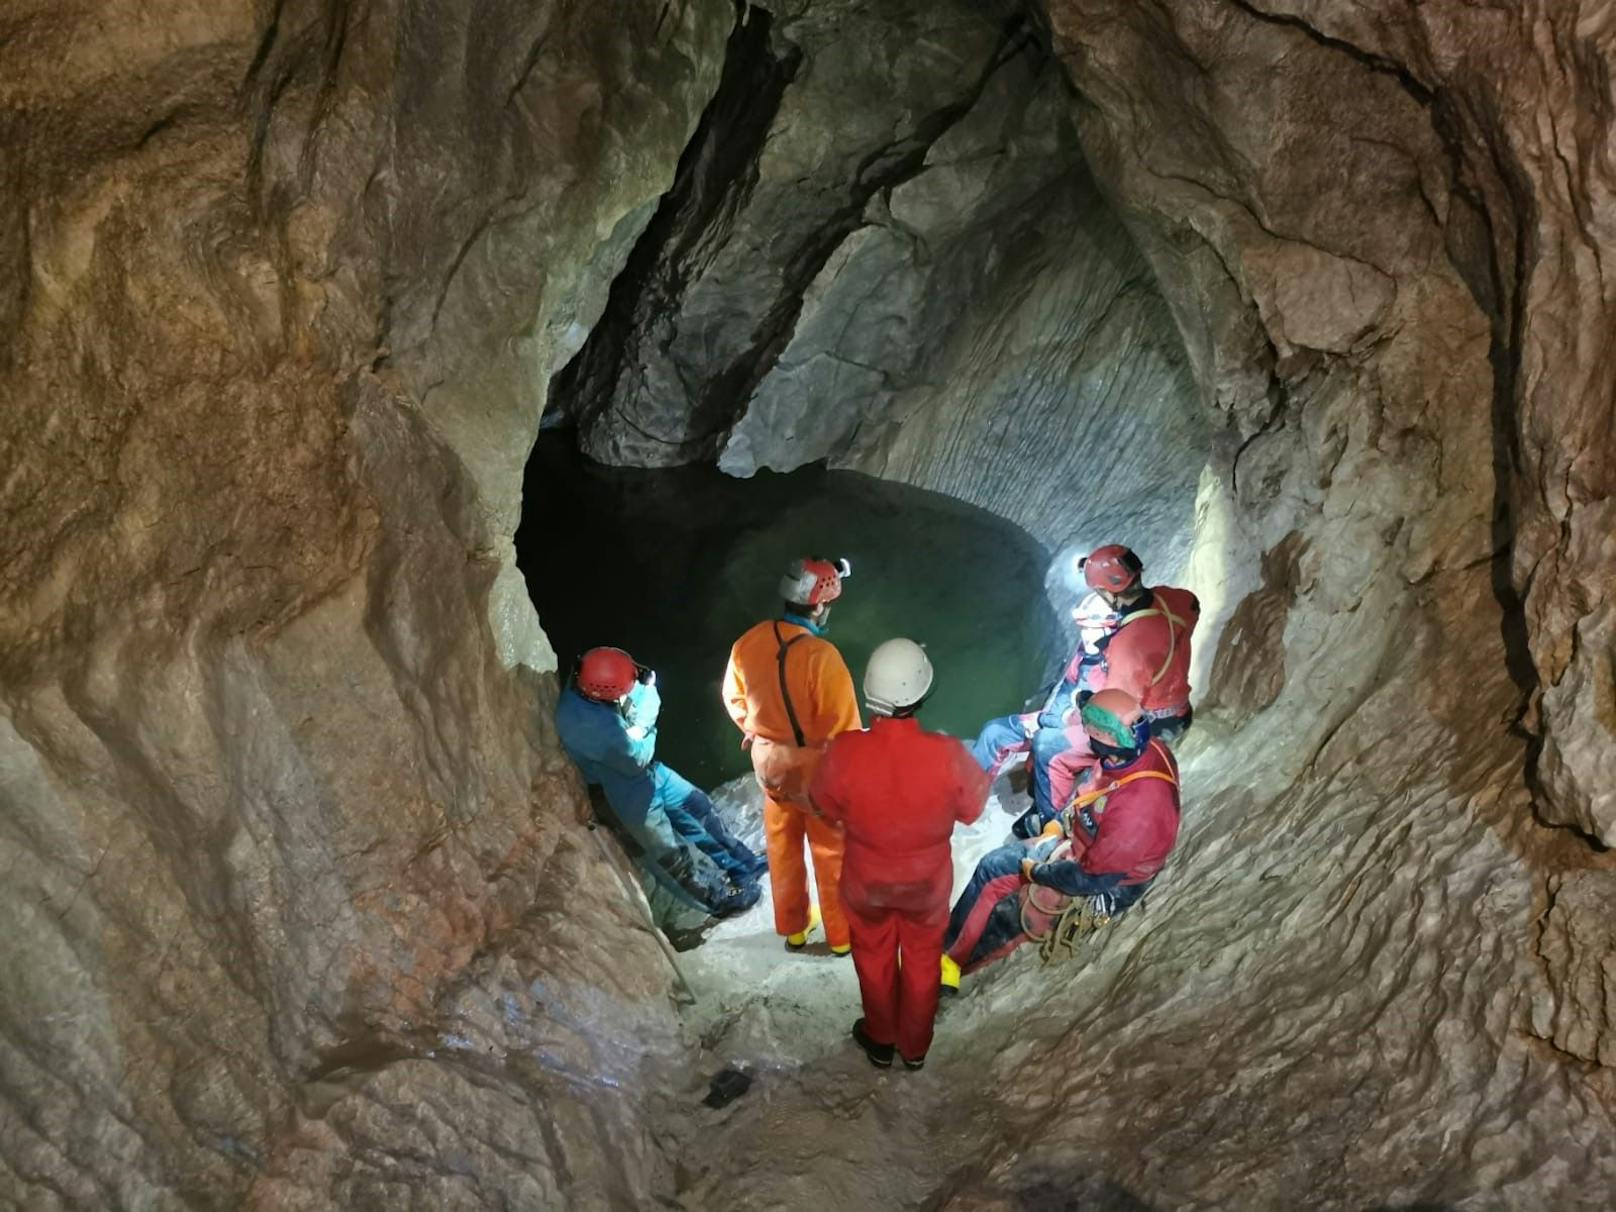 Höhlendrama in Salzburg – jetzt erlösende Nachricht